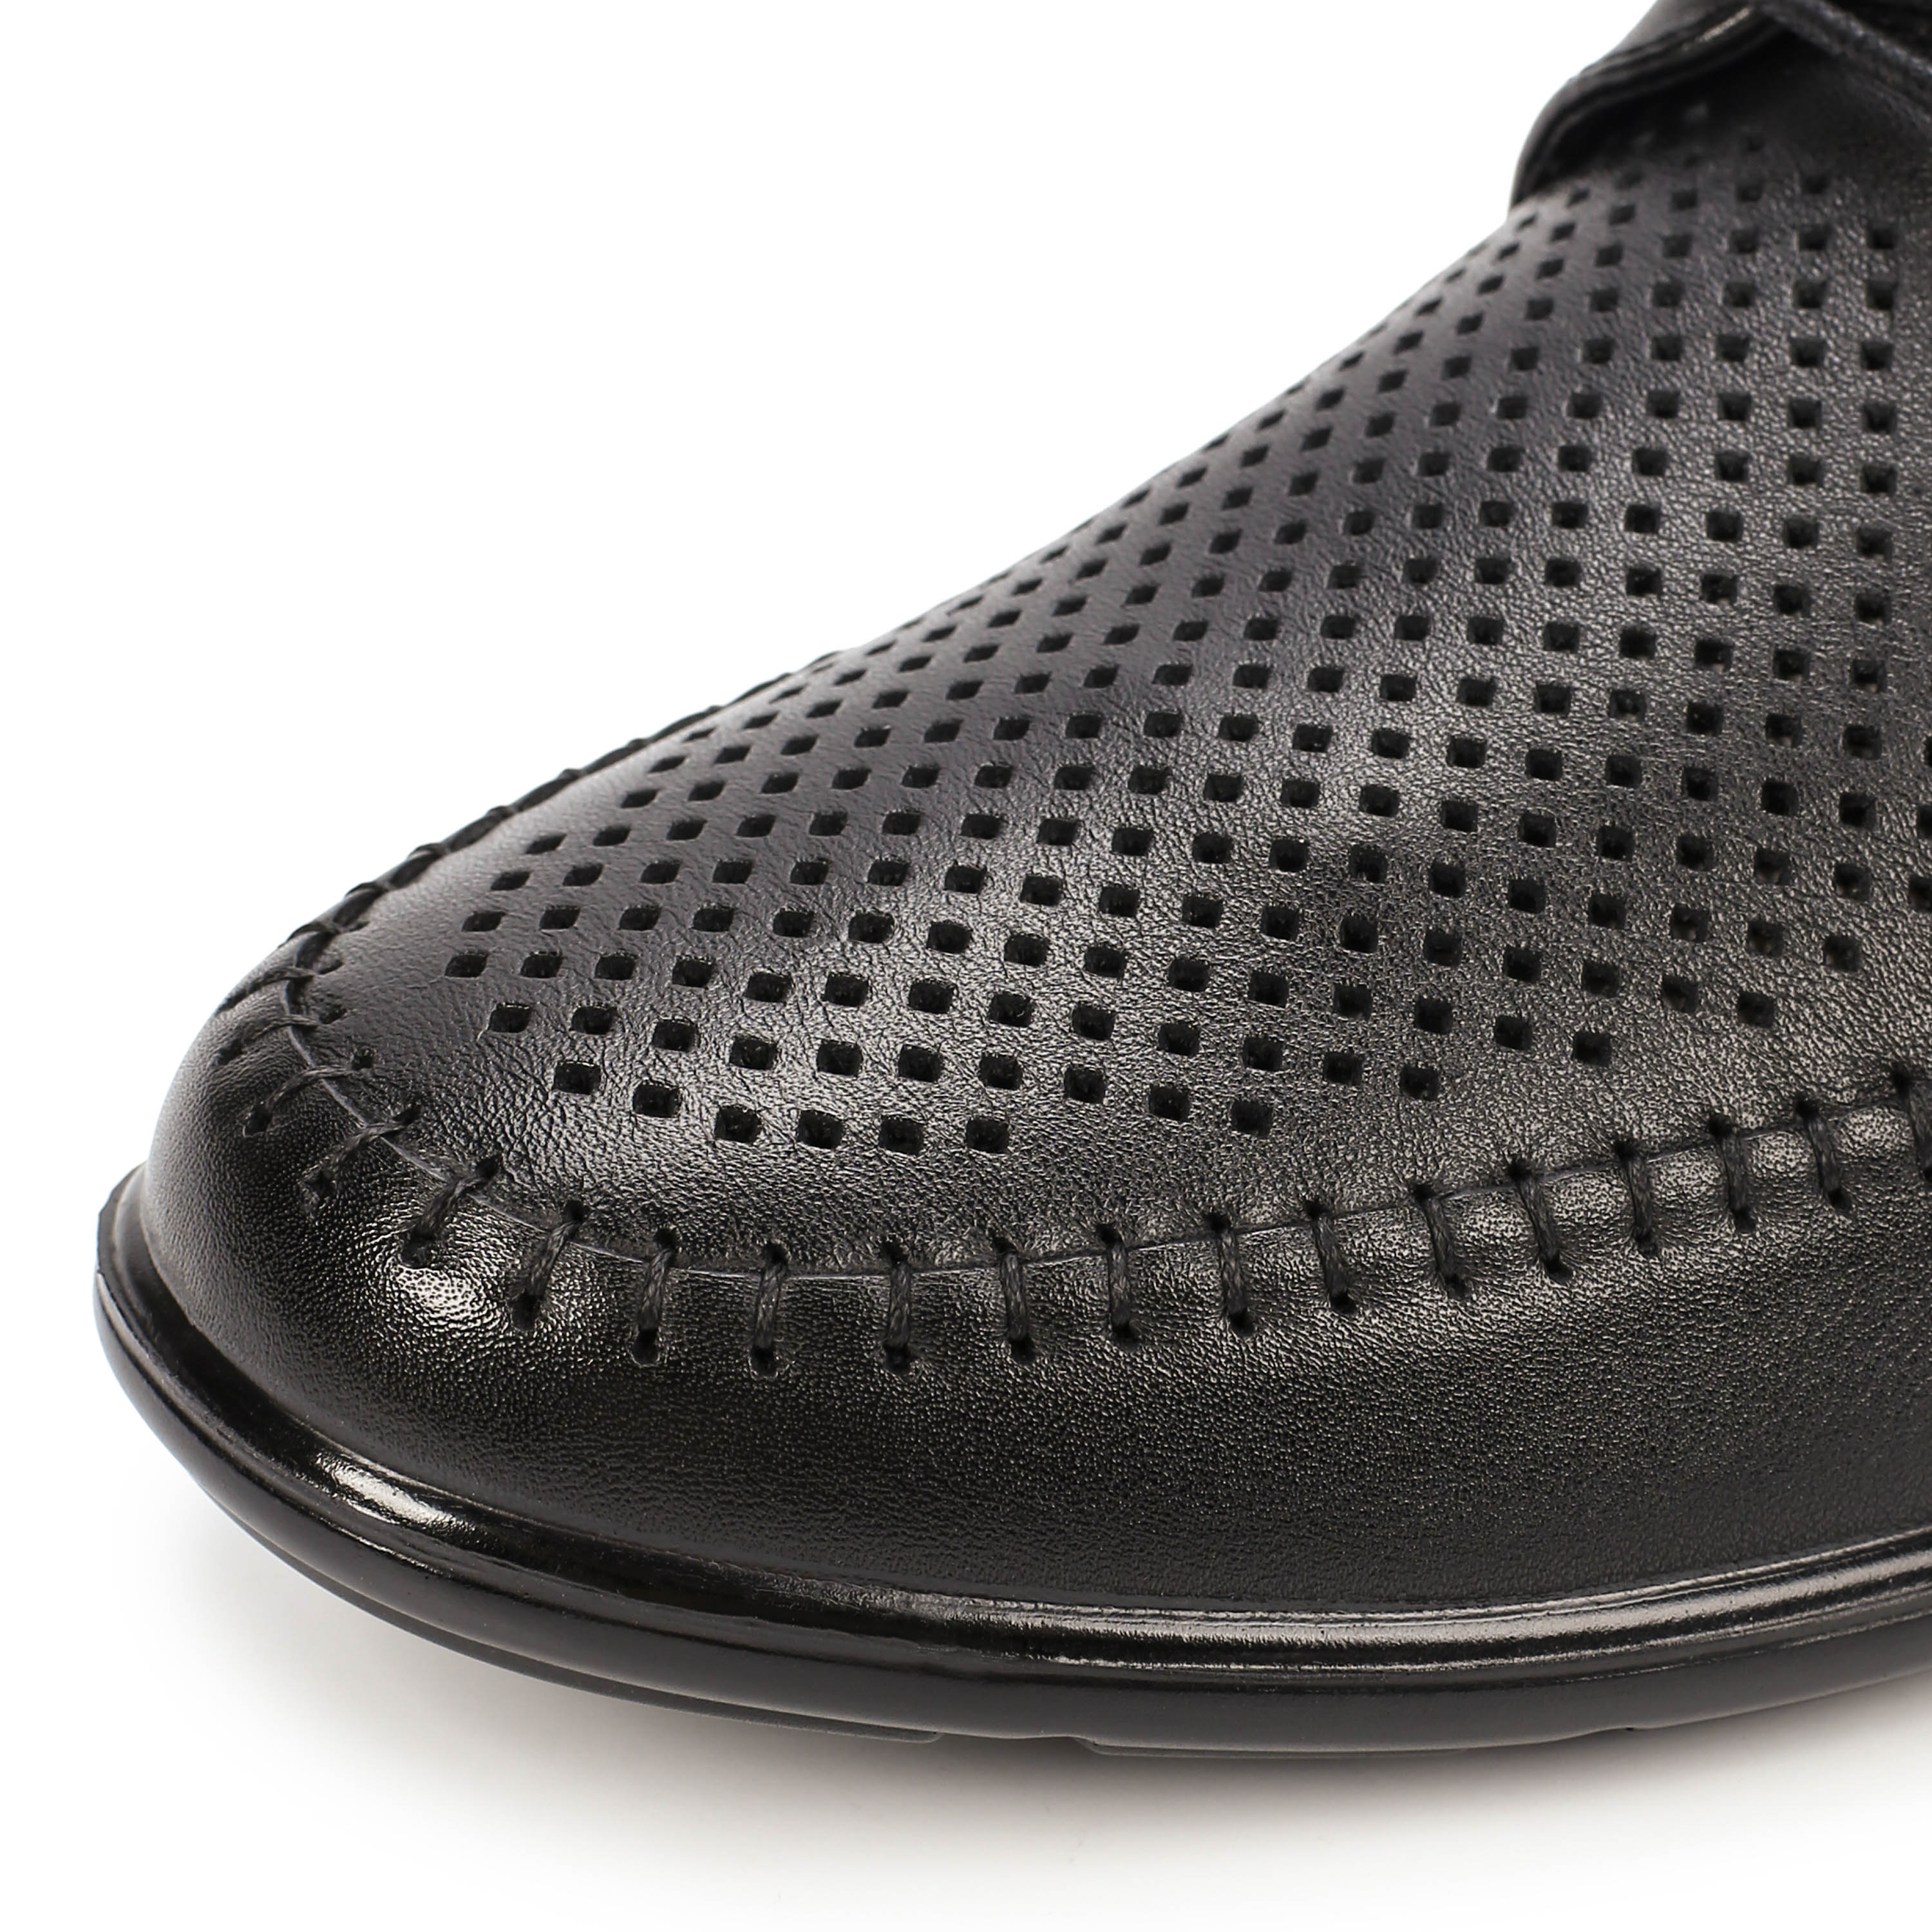 Туфли MUNZ Shoes 059-016A-1102 059-016A-1102, цвет черный, размер 40 полуботинки - фото 6